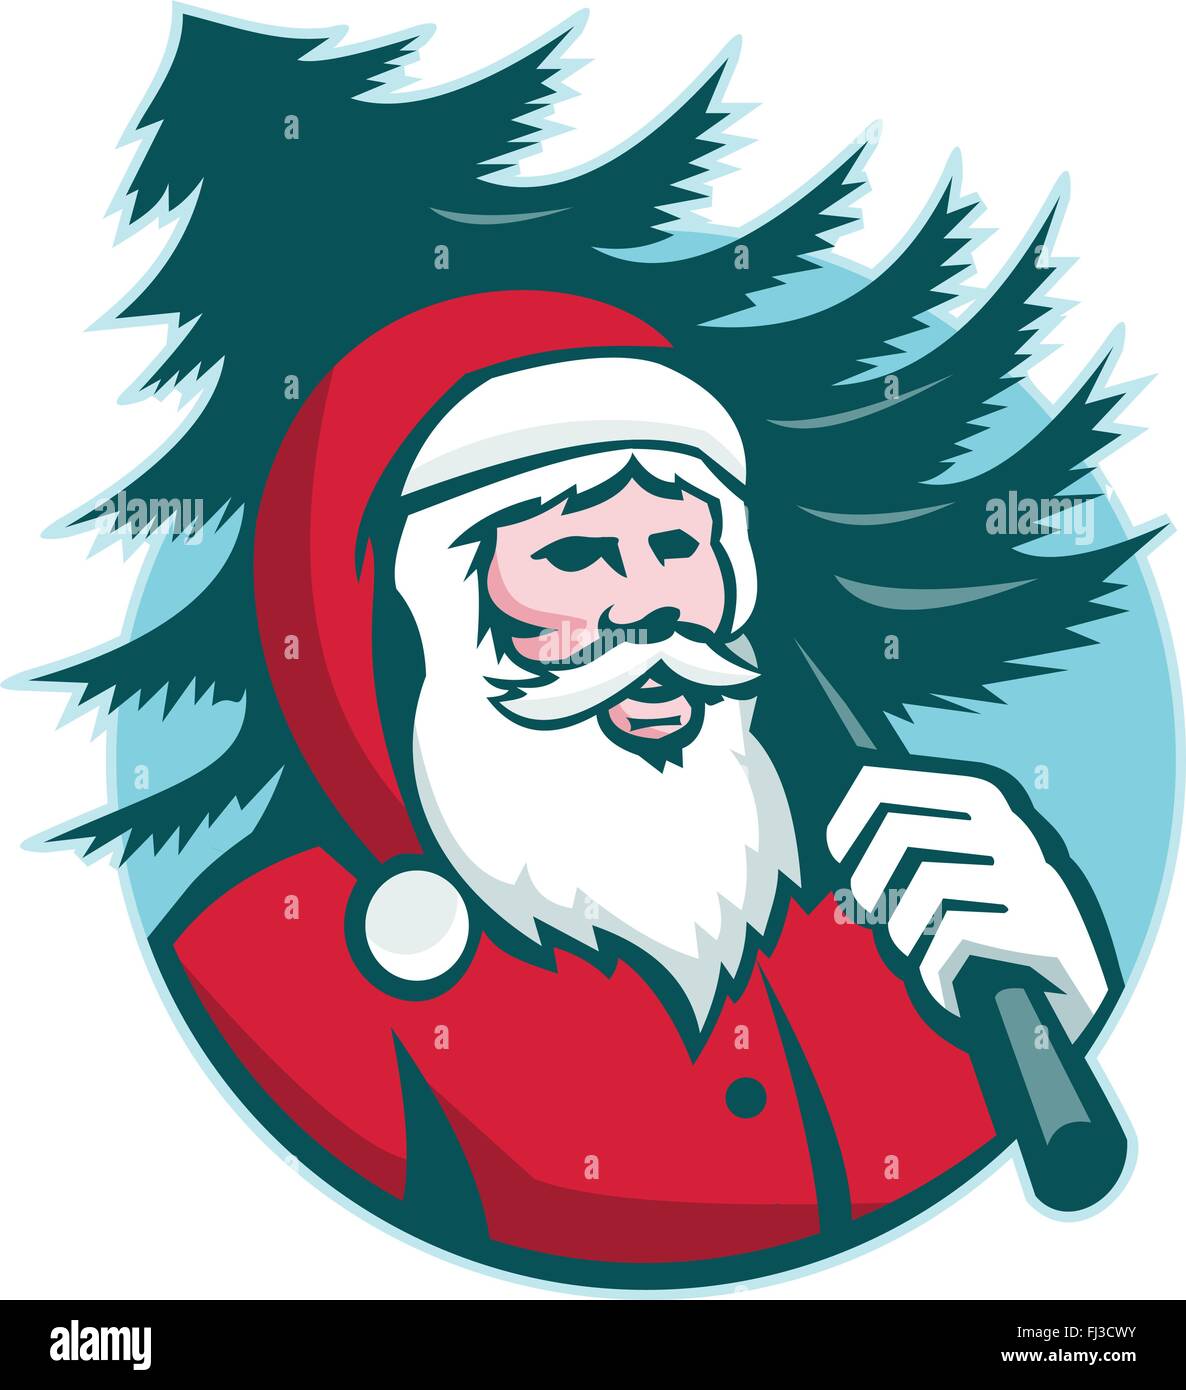 Illustration von Santa Claus Kris Kringle tragen einen Weihnachtsbaum mit Blick auf die vordere Reihe im inneren Kreis im retro-Stil auf isolierten weißen Hintergrund getan. Stock Vektor